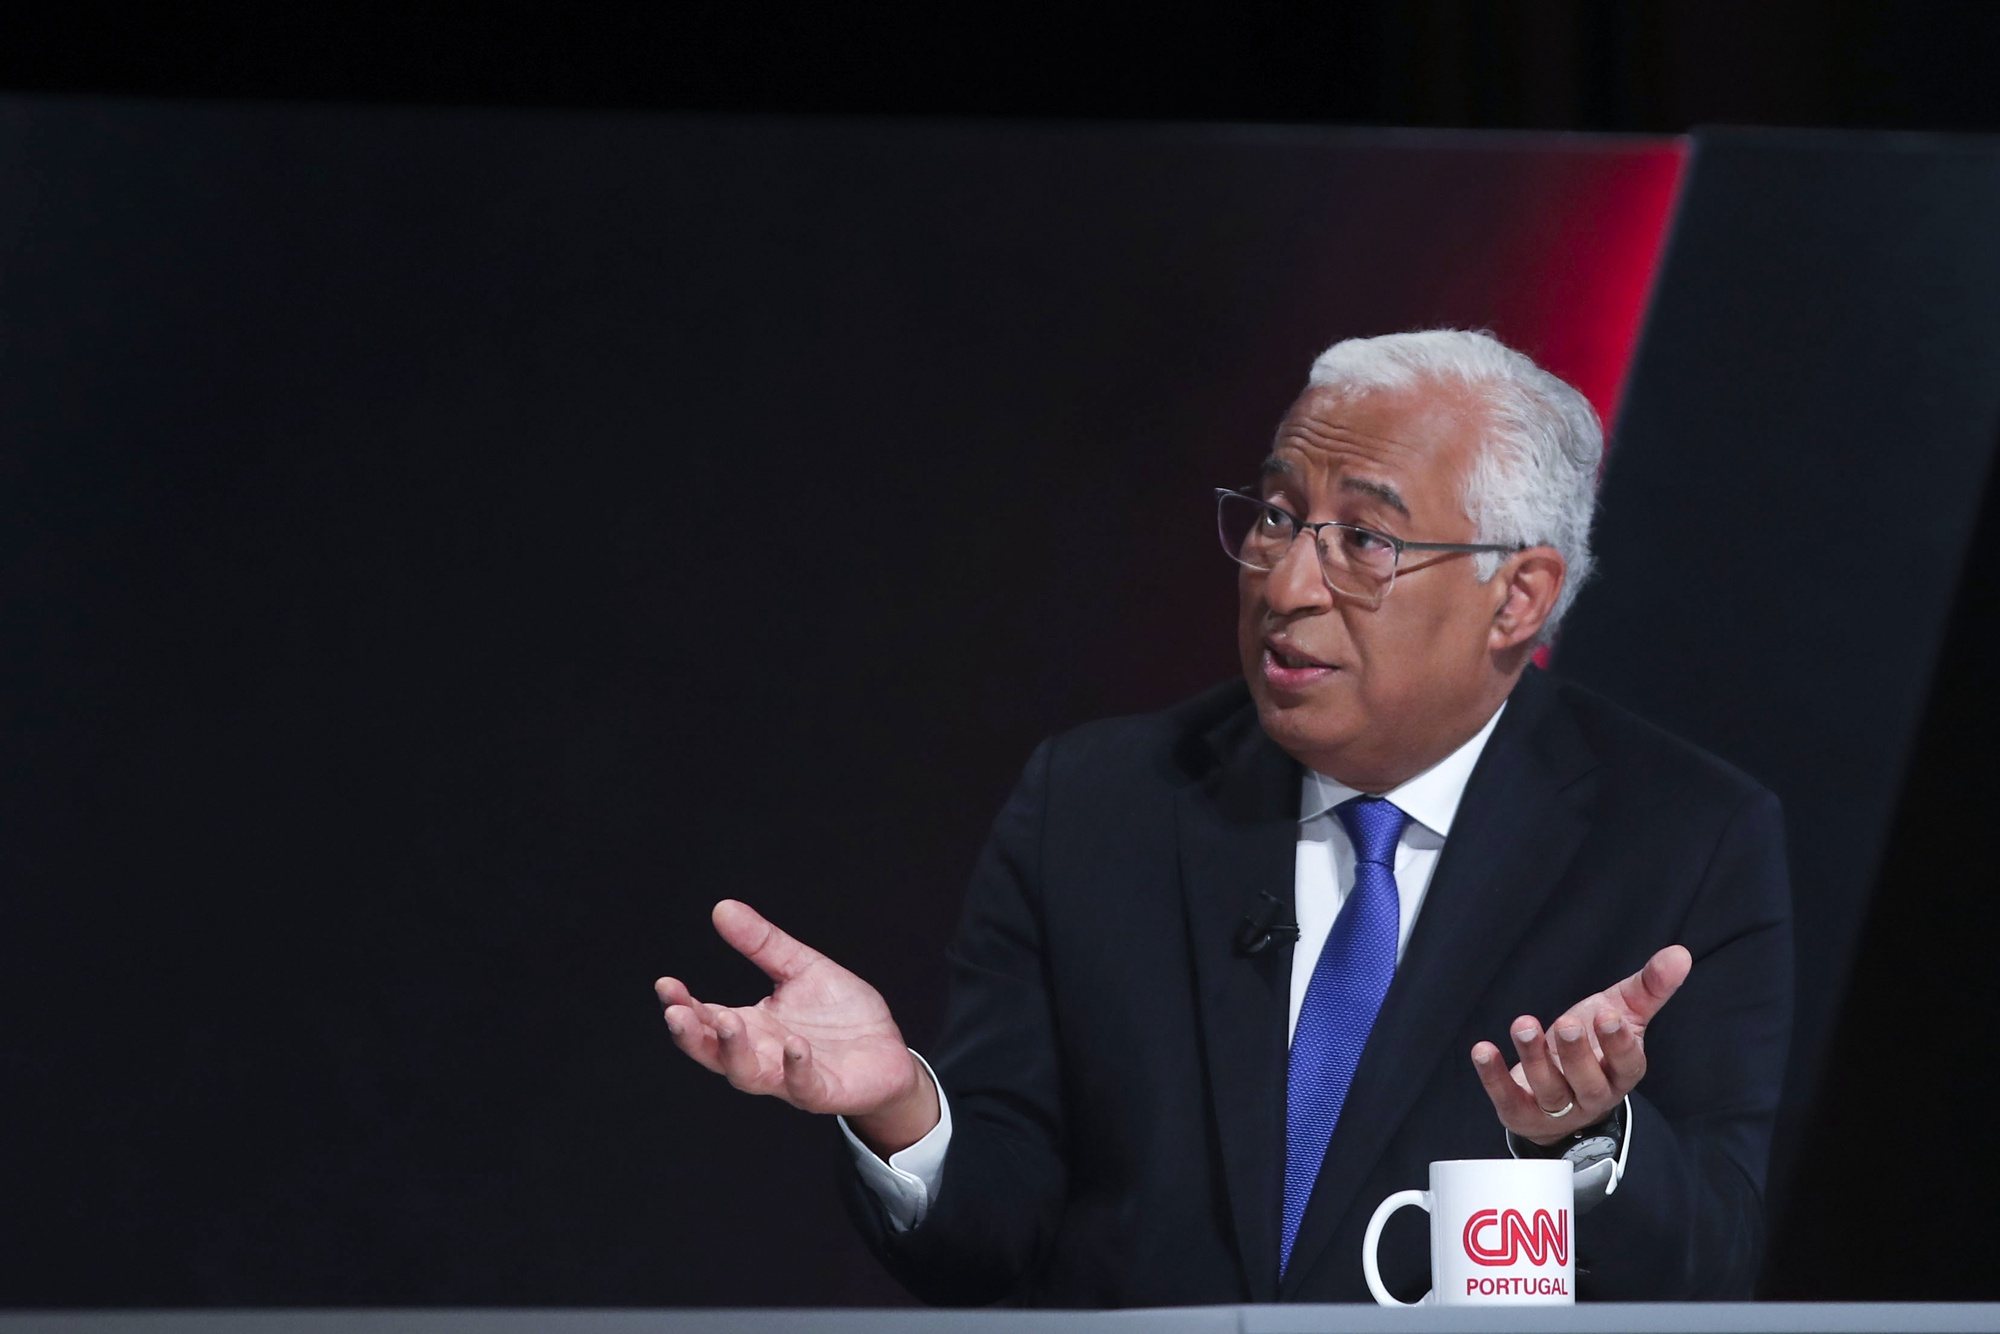 O primeiro-ministro, António Costa, participa no programa “O Princípio da Incerteza” - CNN Portugal Summit, que decorreu em Lisboa, 20 de junho de 2022. ANTÓNIO COTRIM/LUSA